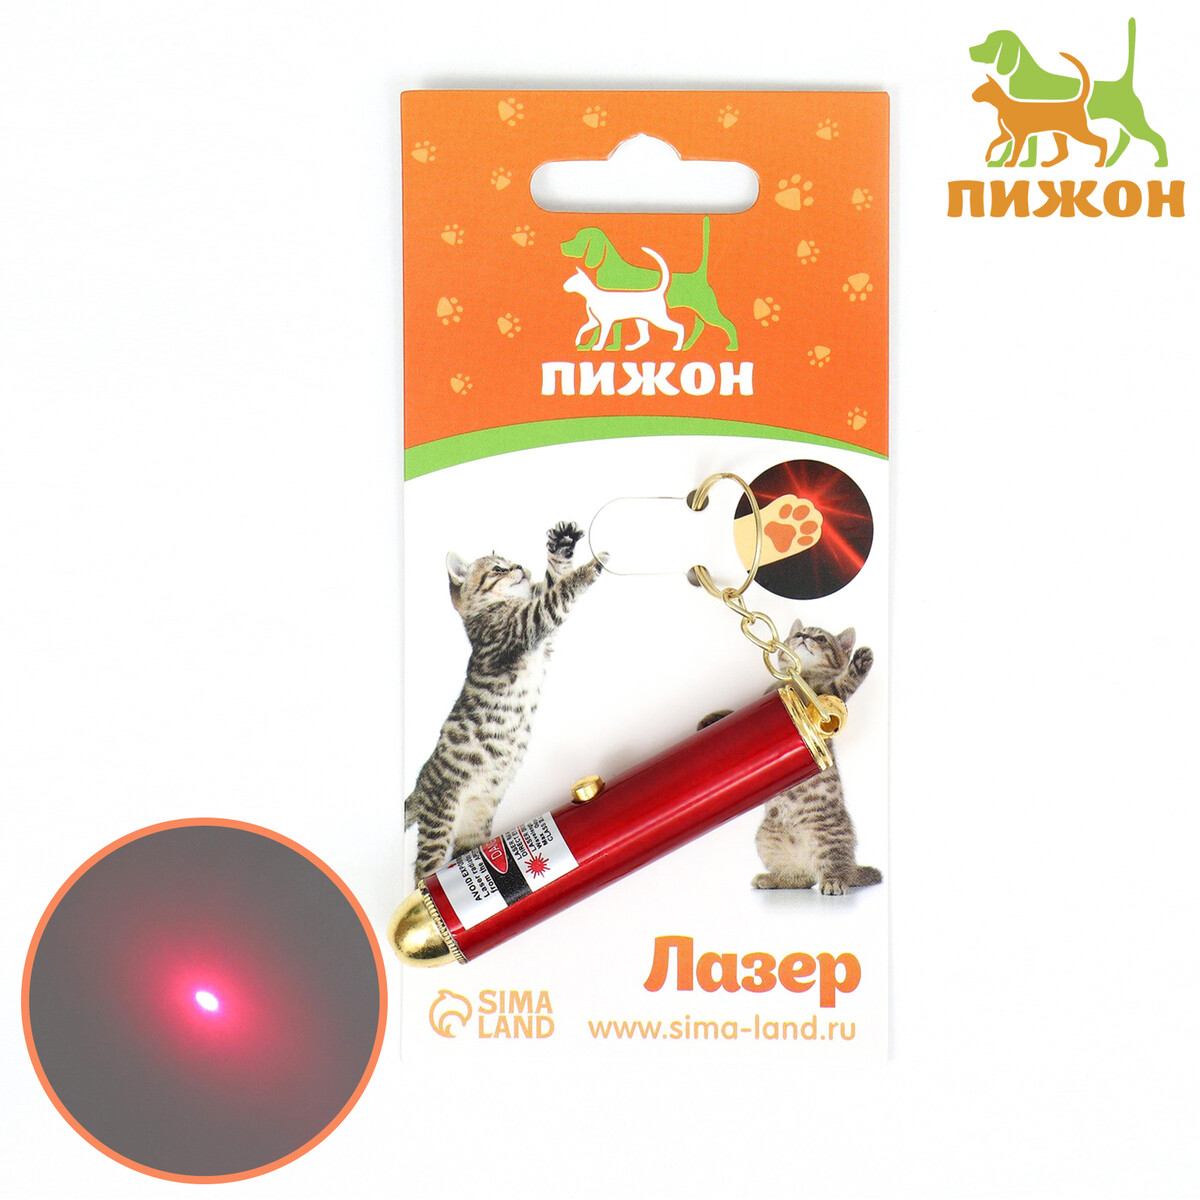 Игрушка для кошек игрушка для кошек лазер мышь